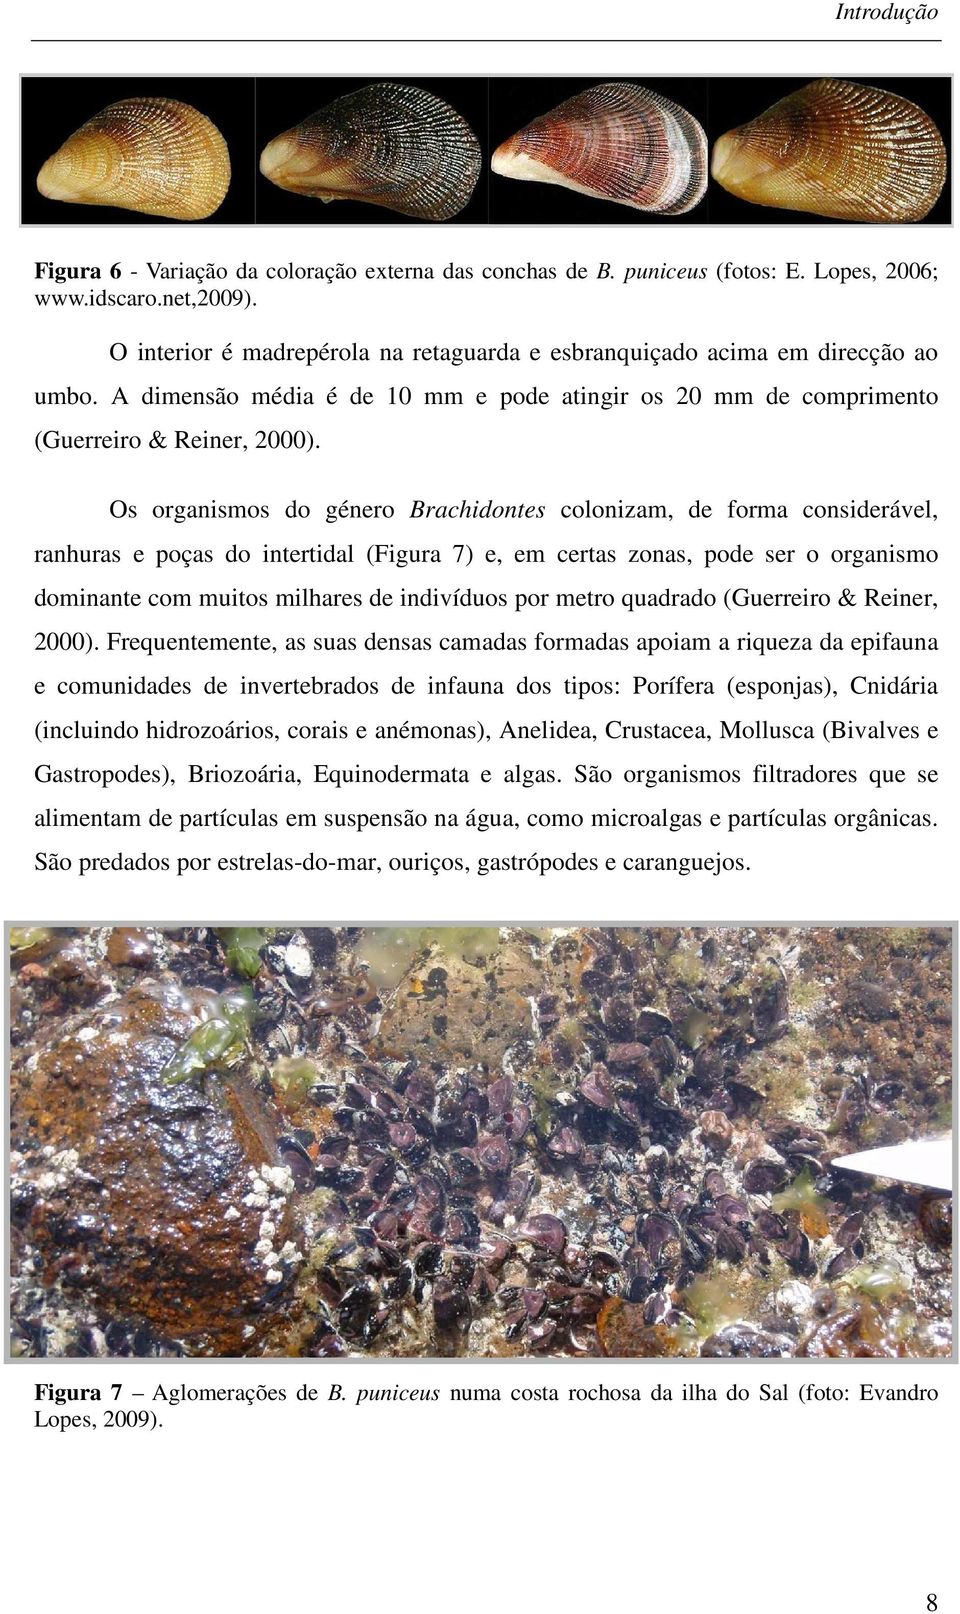 Os organismos do género Brachidontes colonizam, de forma considerável, ranhuras e poças do intertidal (Figura 7) e, em certas zonas, pode ser o organismo dominante com muitos milhares de indivíduos